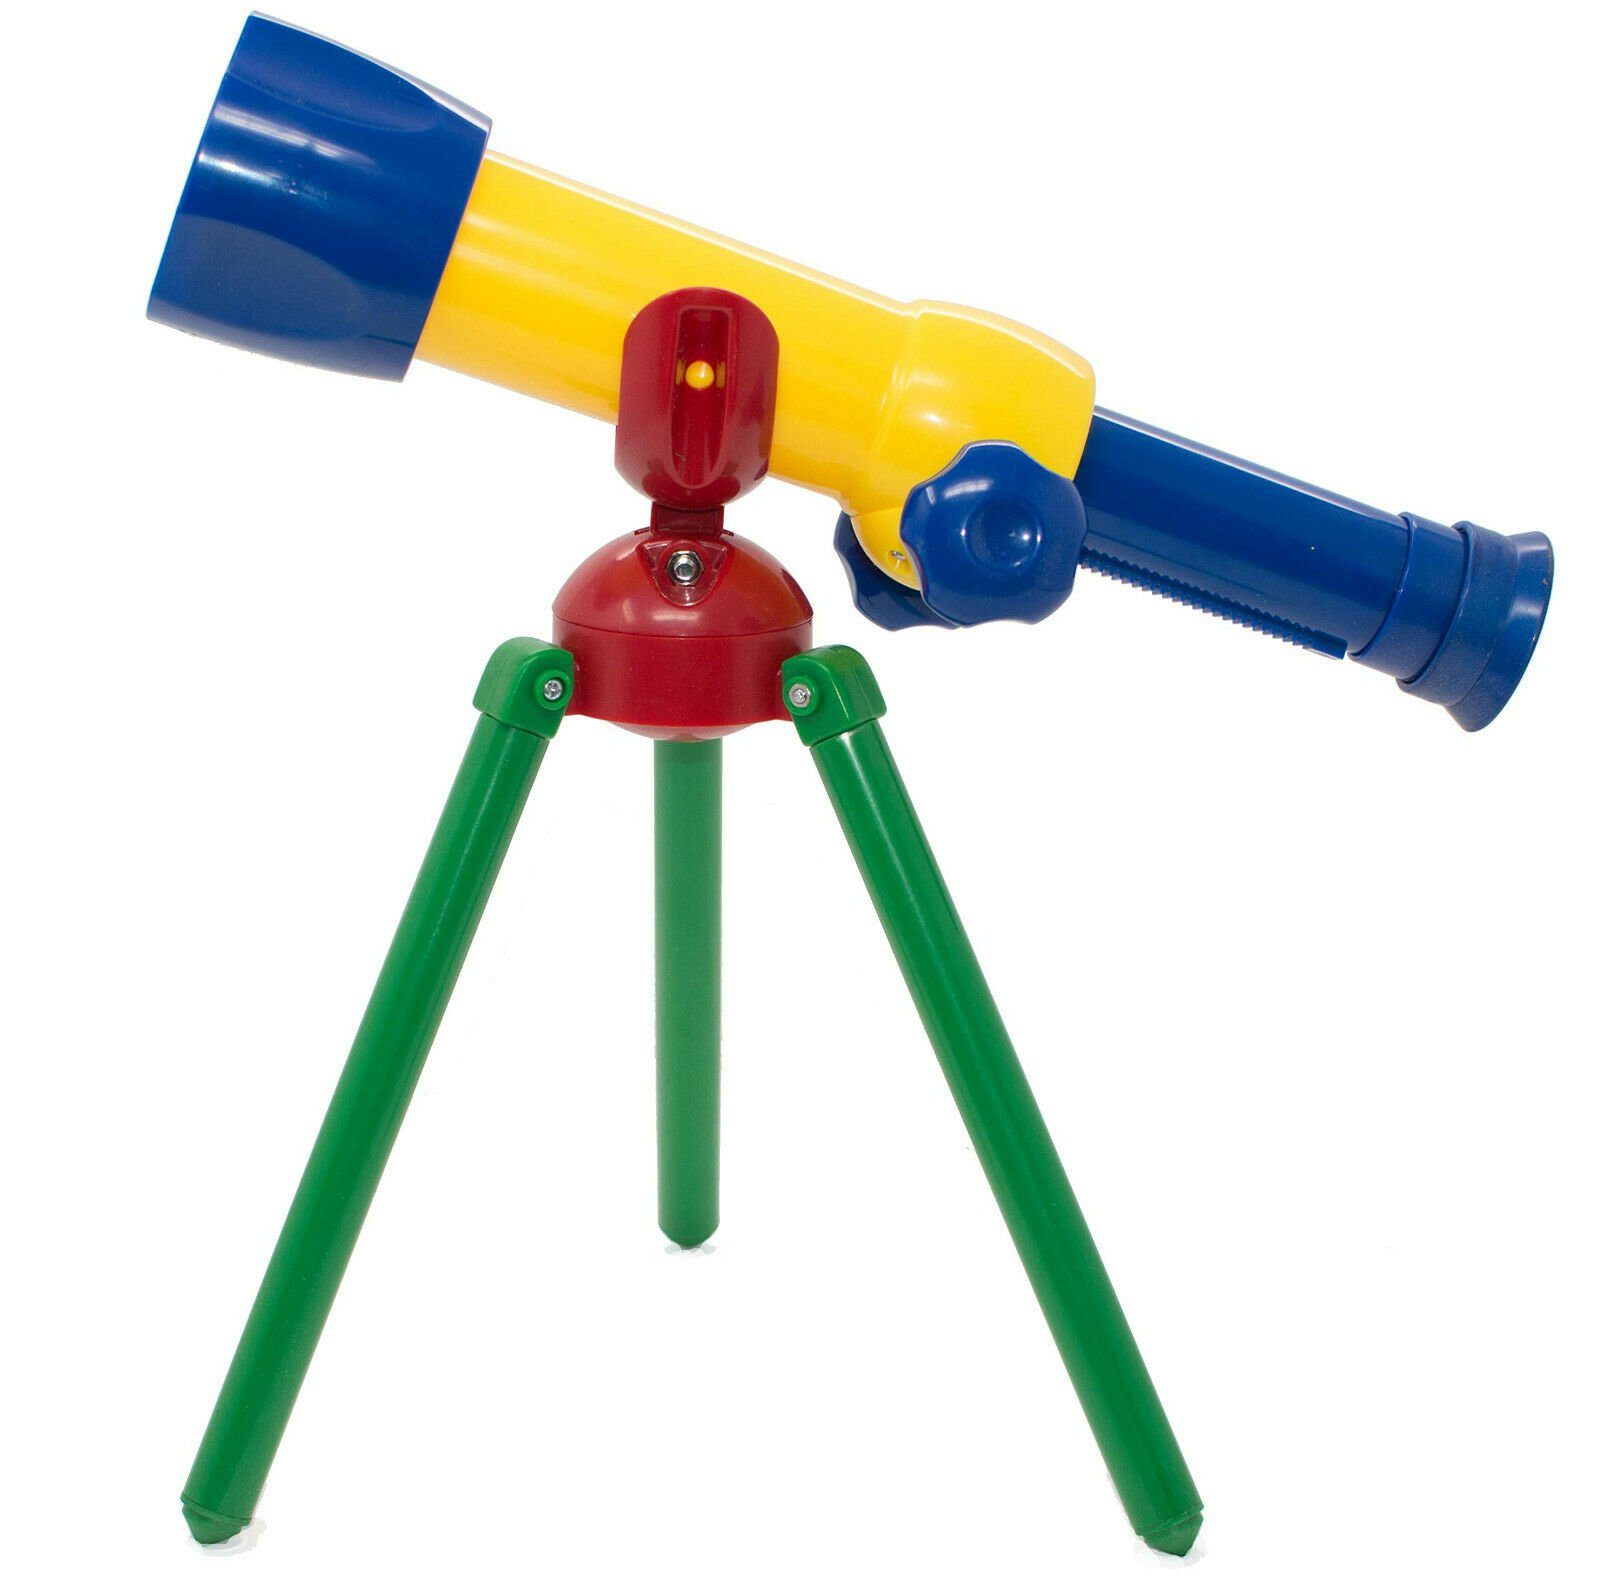 Edu-Toys Experimentierkasten (1-tlg), ab erstes Teleskop, für Mein 3 Kinder JS005 Jahre